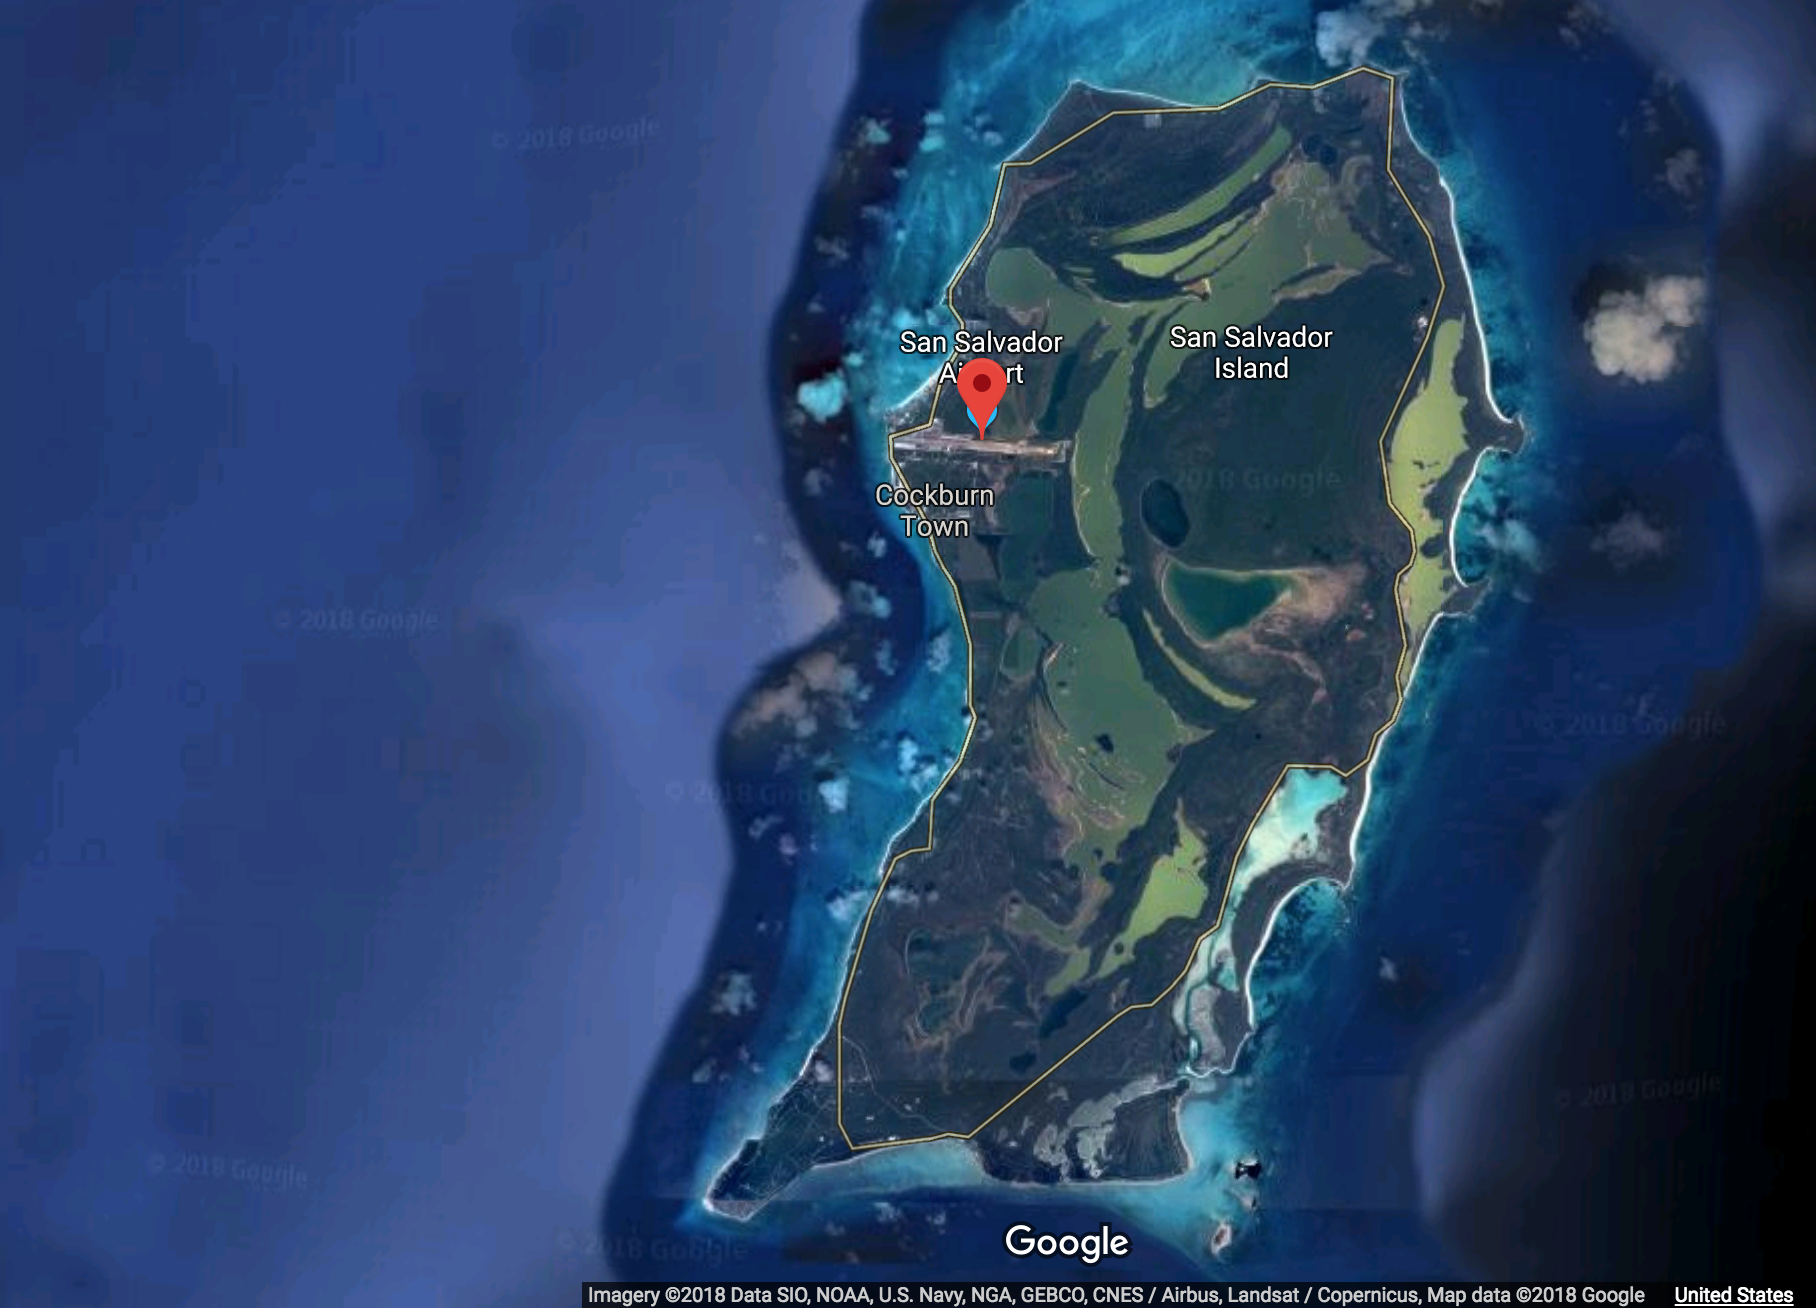 San Salvador Island, The Bahamas on Google Maps (Image: Google Maps)